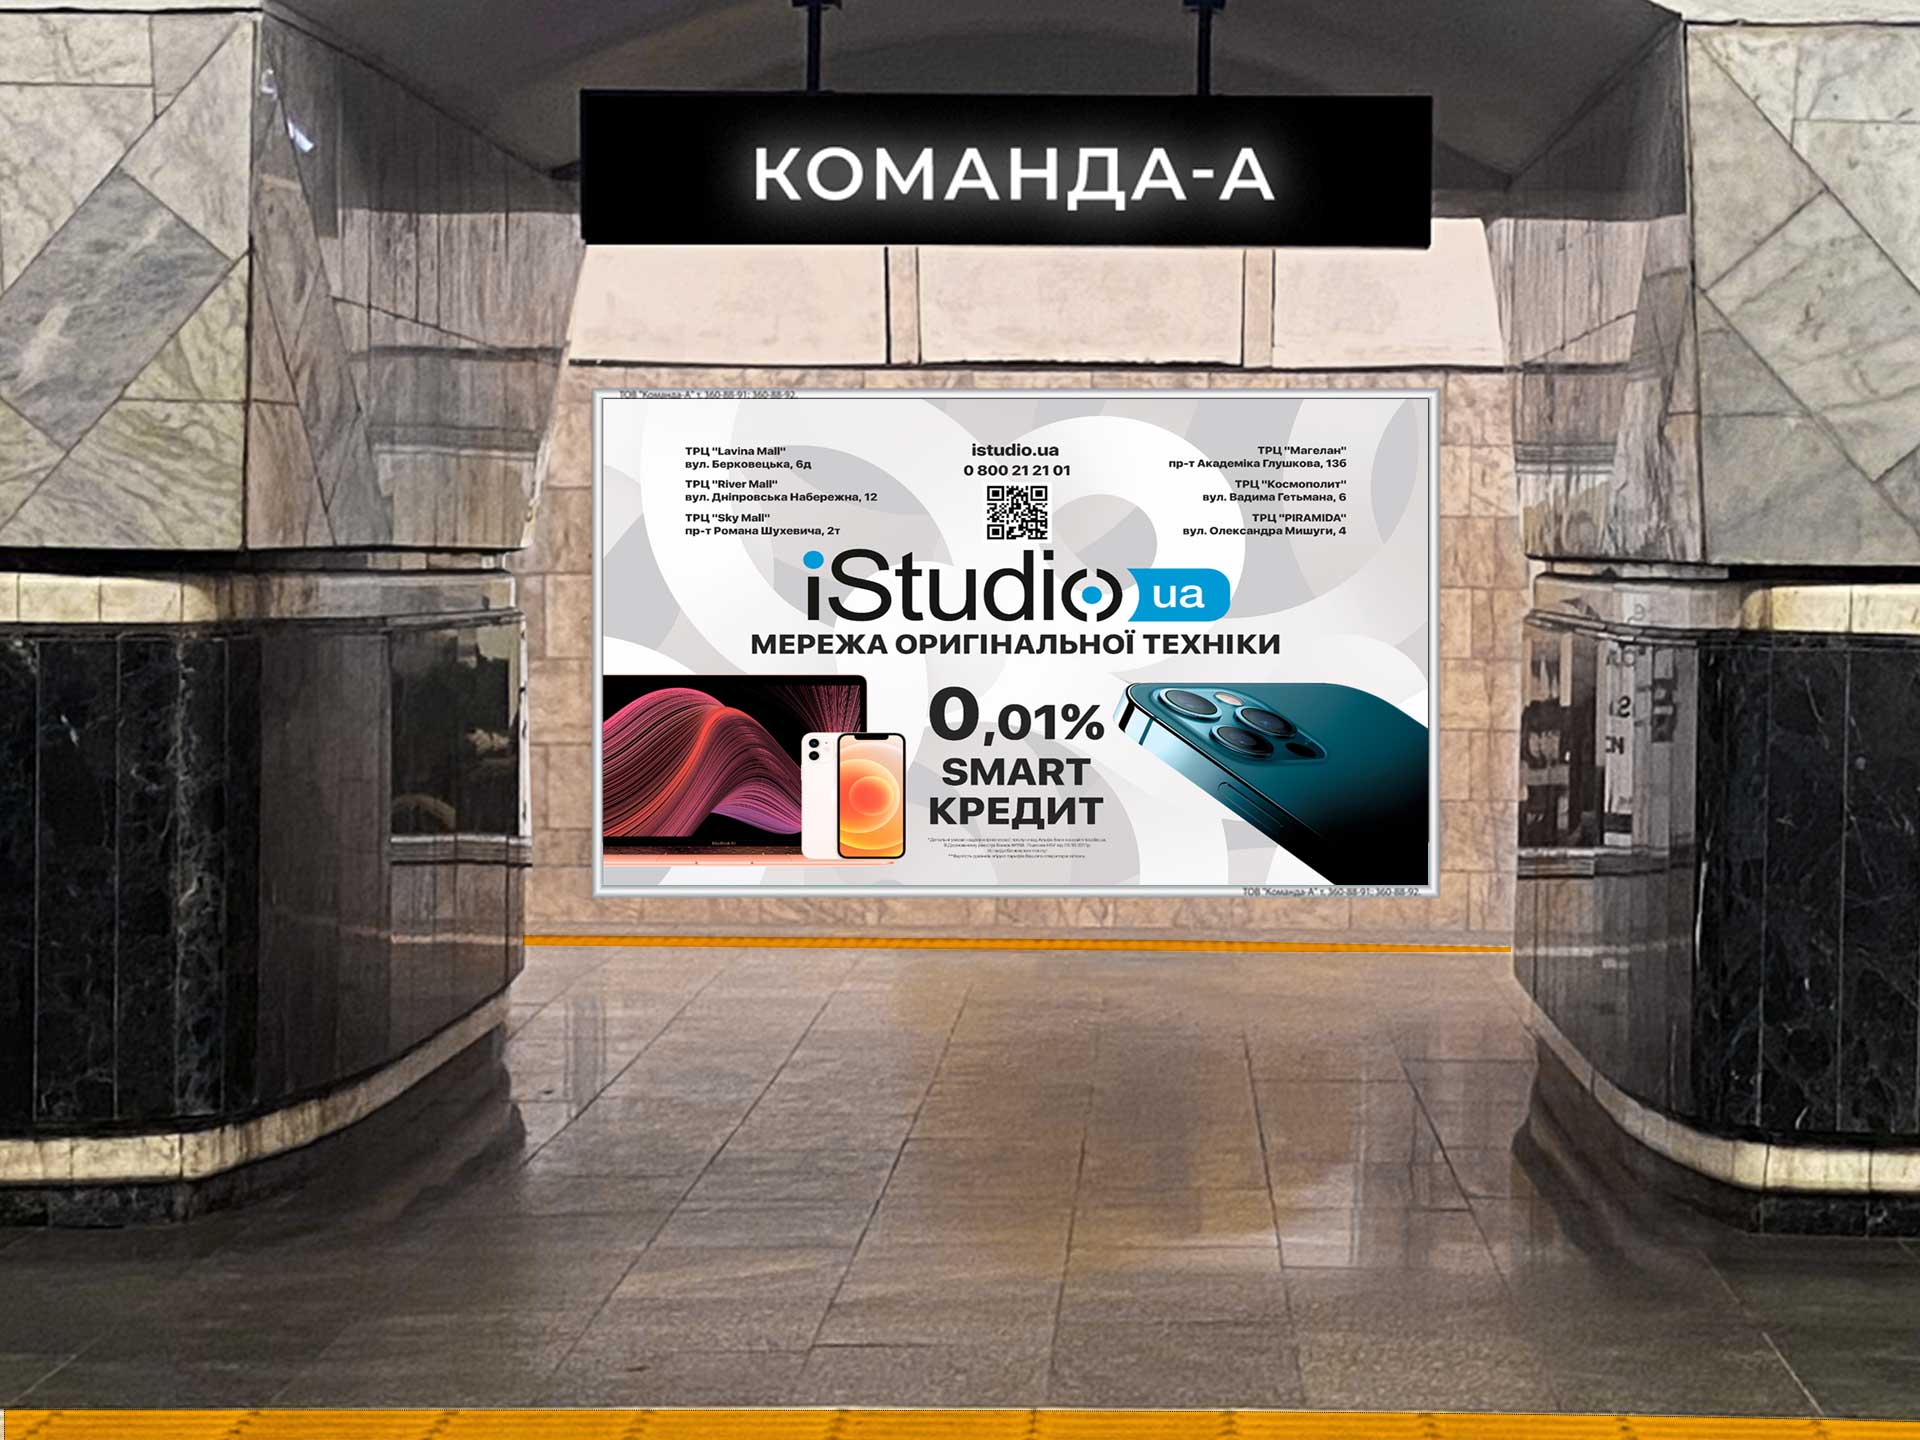 Створюємо дизайн рекламних плакатів і розміщуємо в київському метро! КОМАНДА-А – прямий оператор